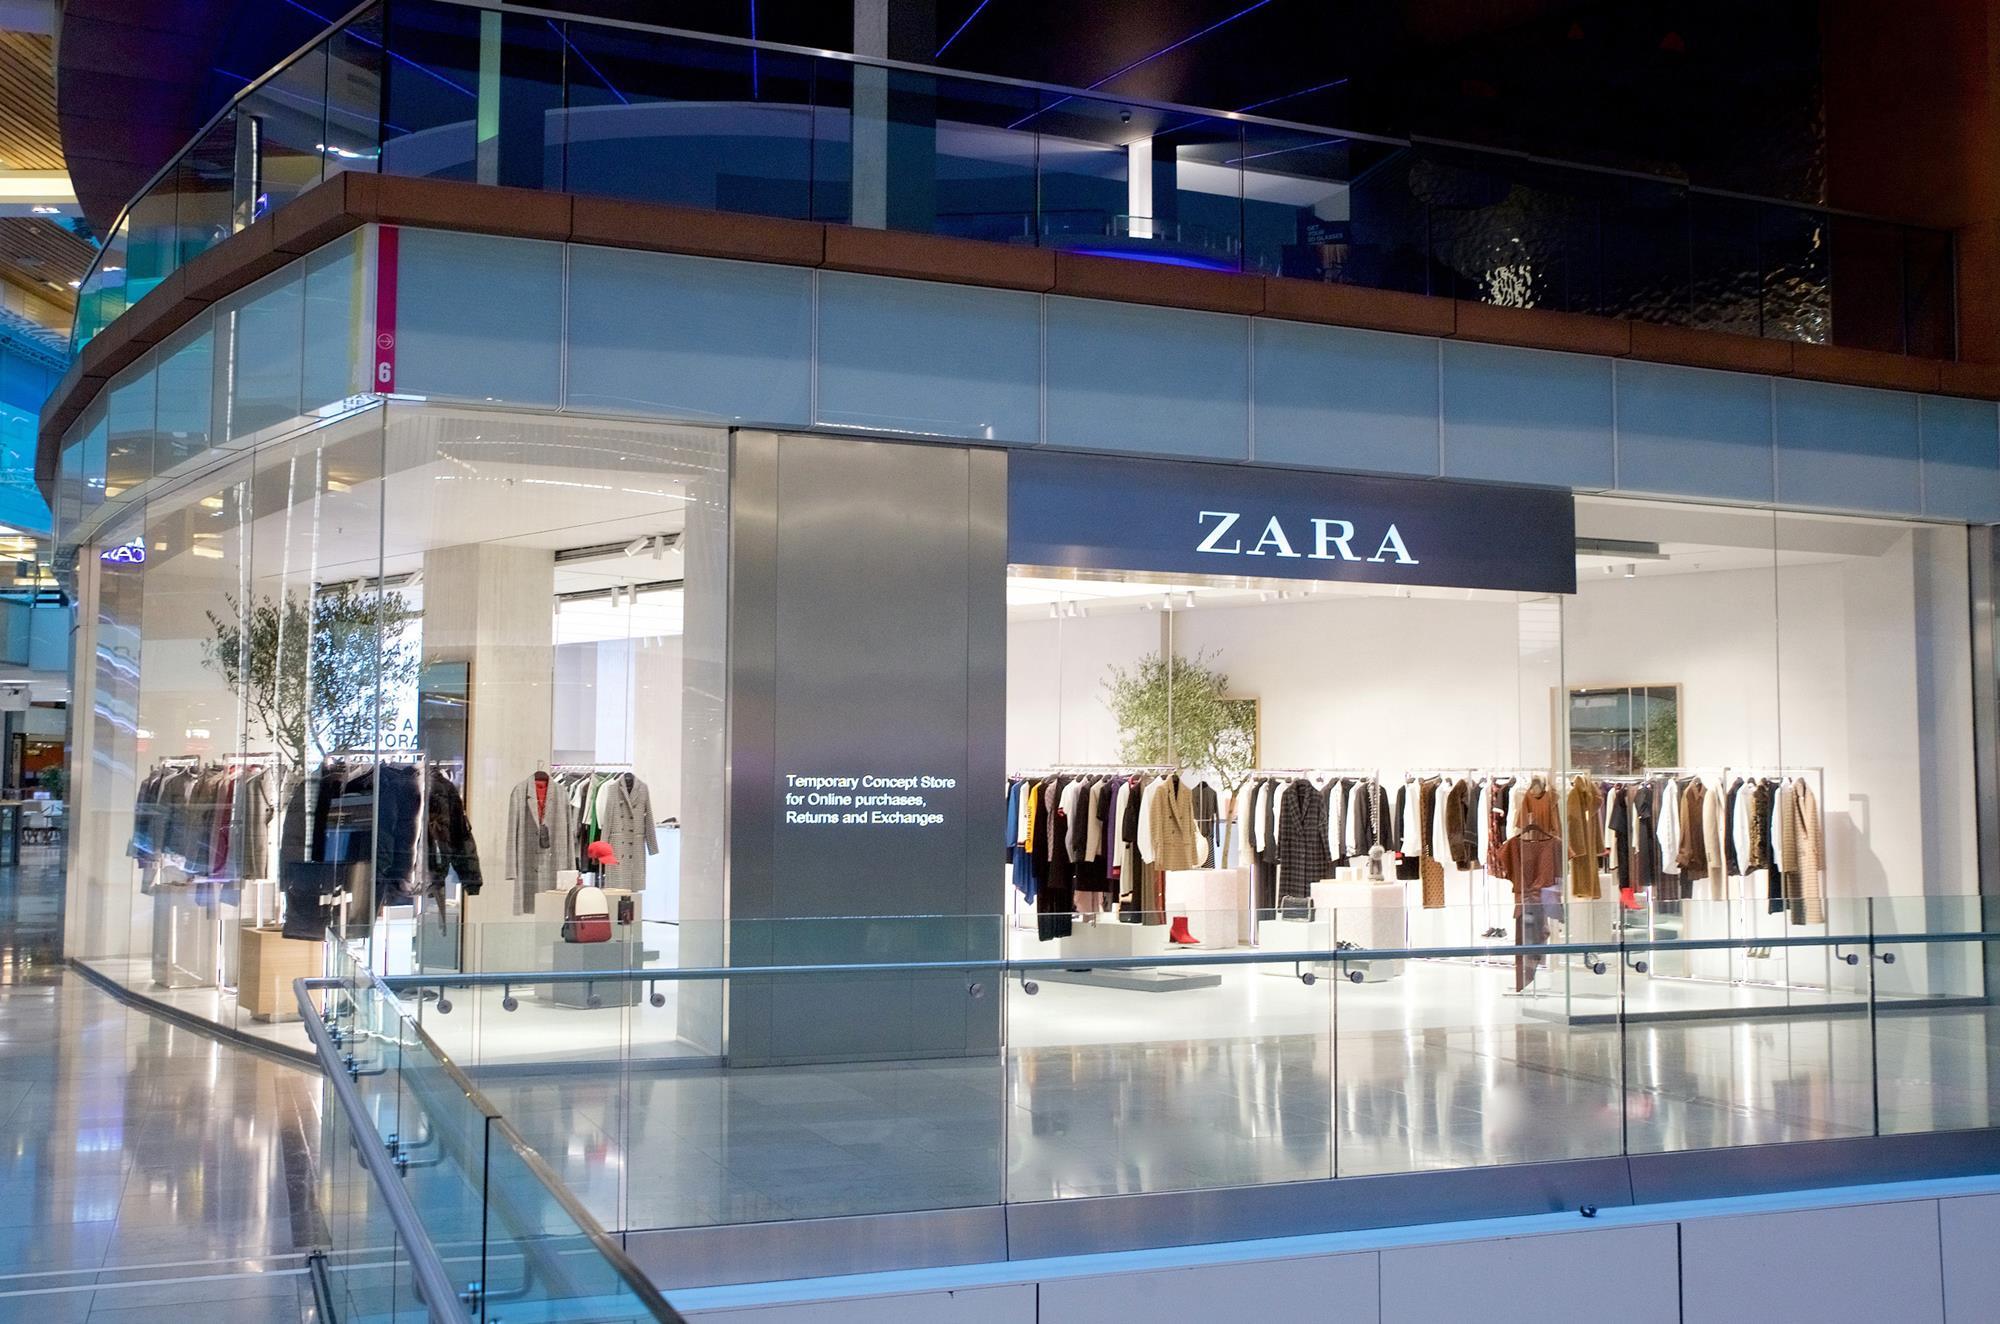 快时尚服装商业模式之战——Zara vs SHEIN